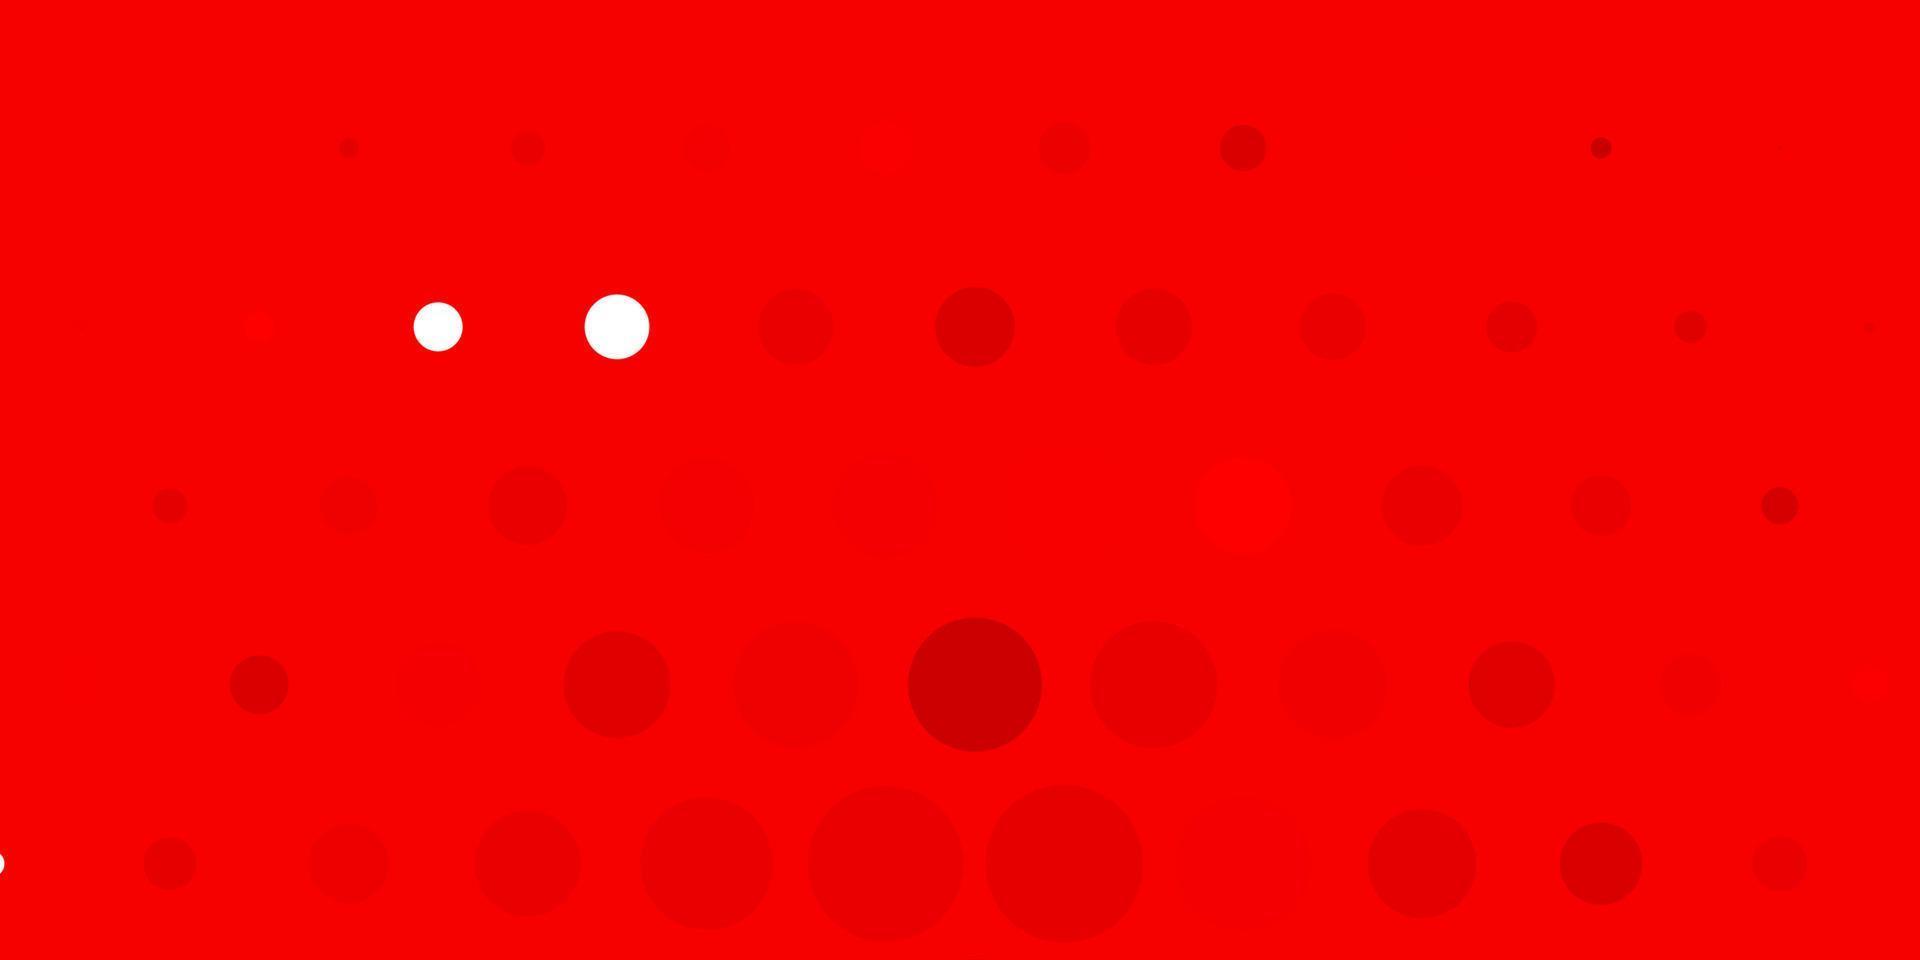 diseño de vector rojo claro con círculos.